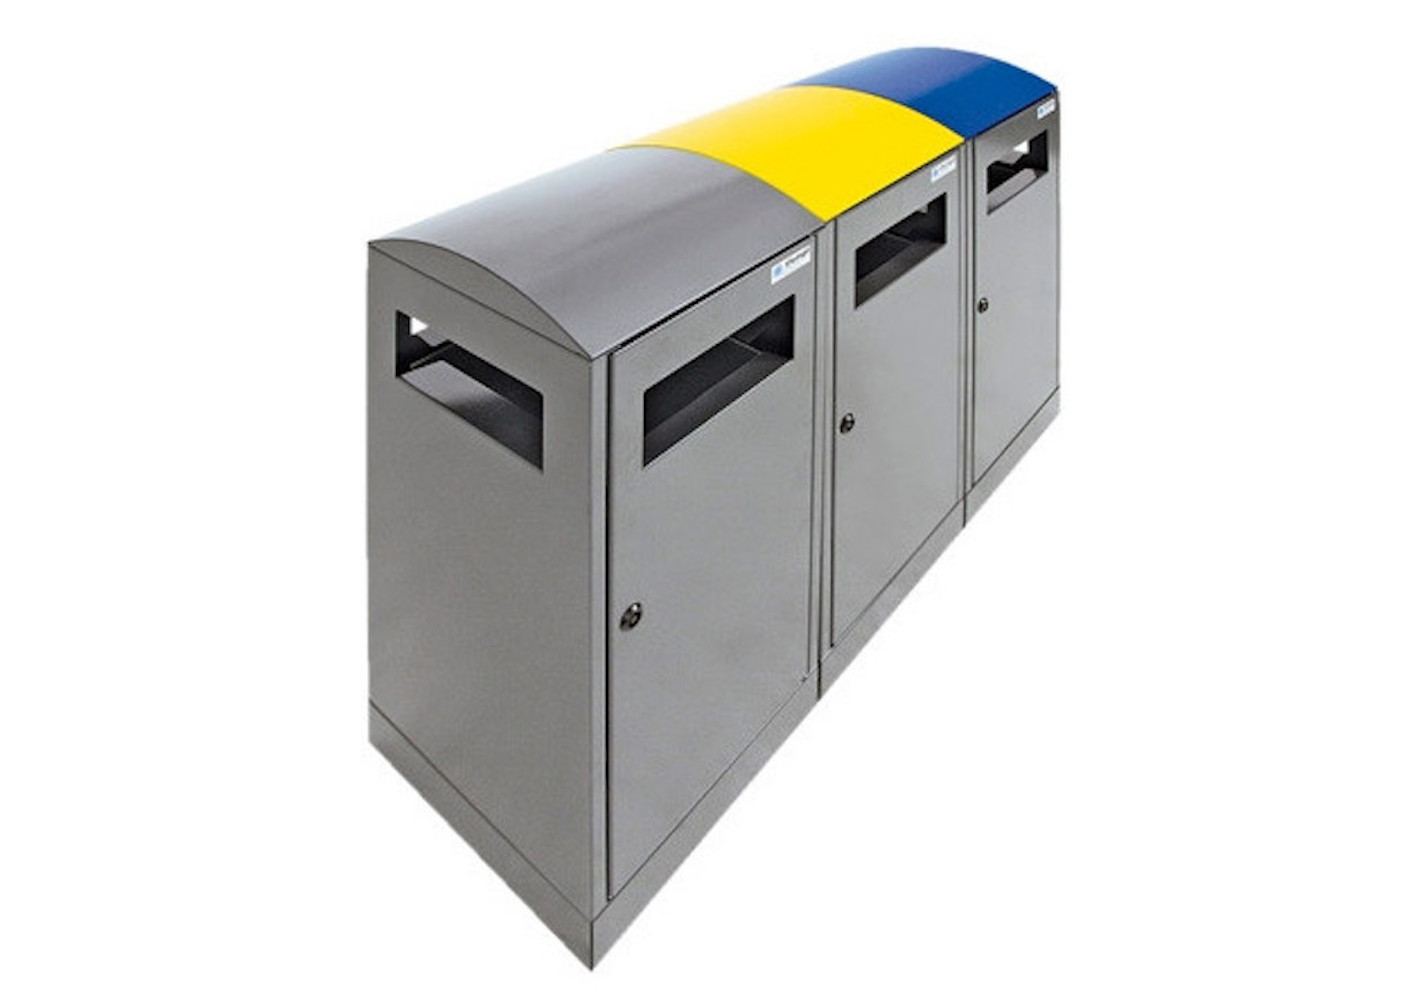 Abfallbehälter für Außenbereiche mit verzinktem Innenbehälter | 3x40 Liter, HxBxt 81,5x105x35cm | Brandschutzklasse A1 | Anthrazitgrau/Enzianblau/Signalgelb